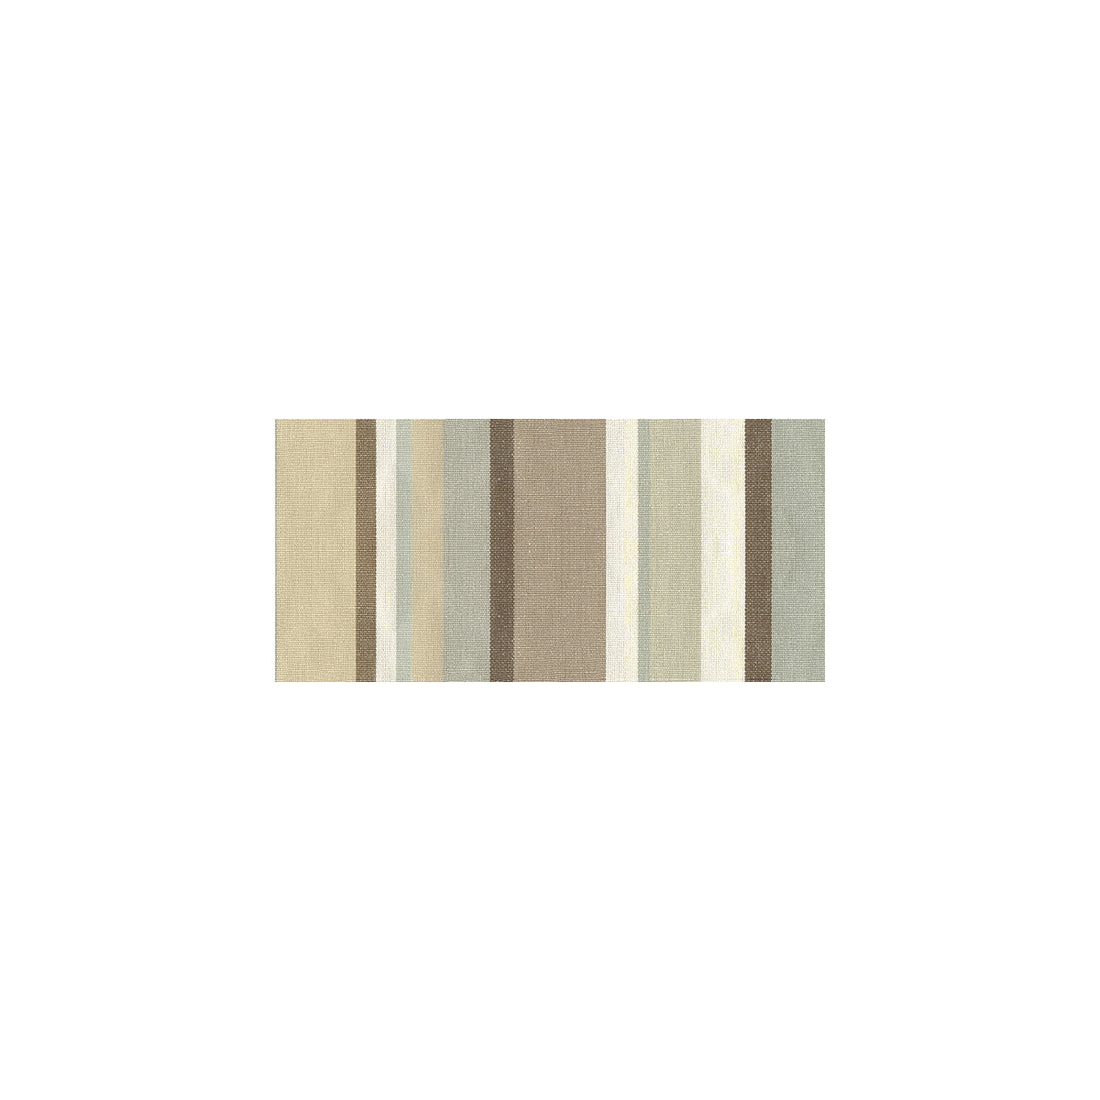 Jobi fabric in spa color - pattern 30696.516.0 - by Kravet Basics